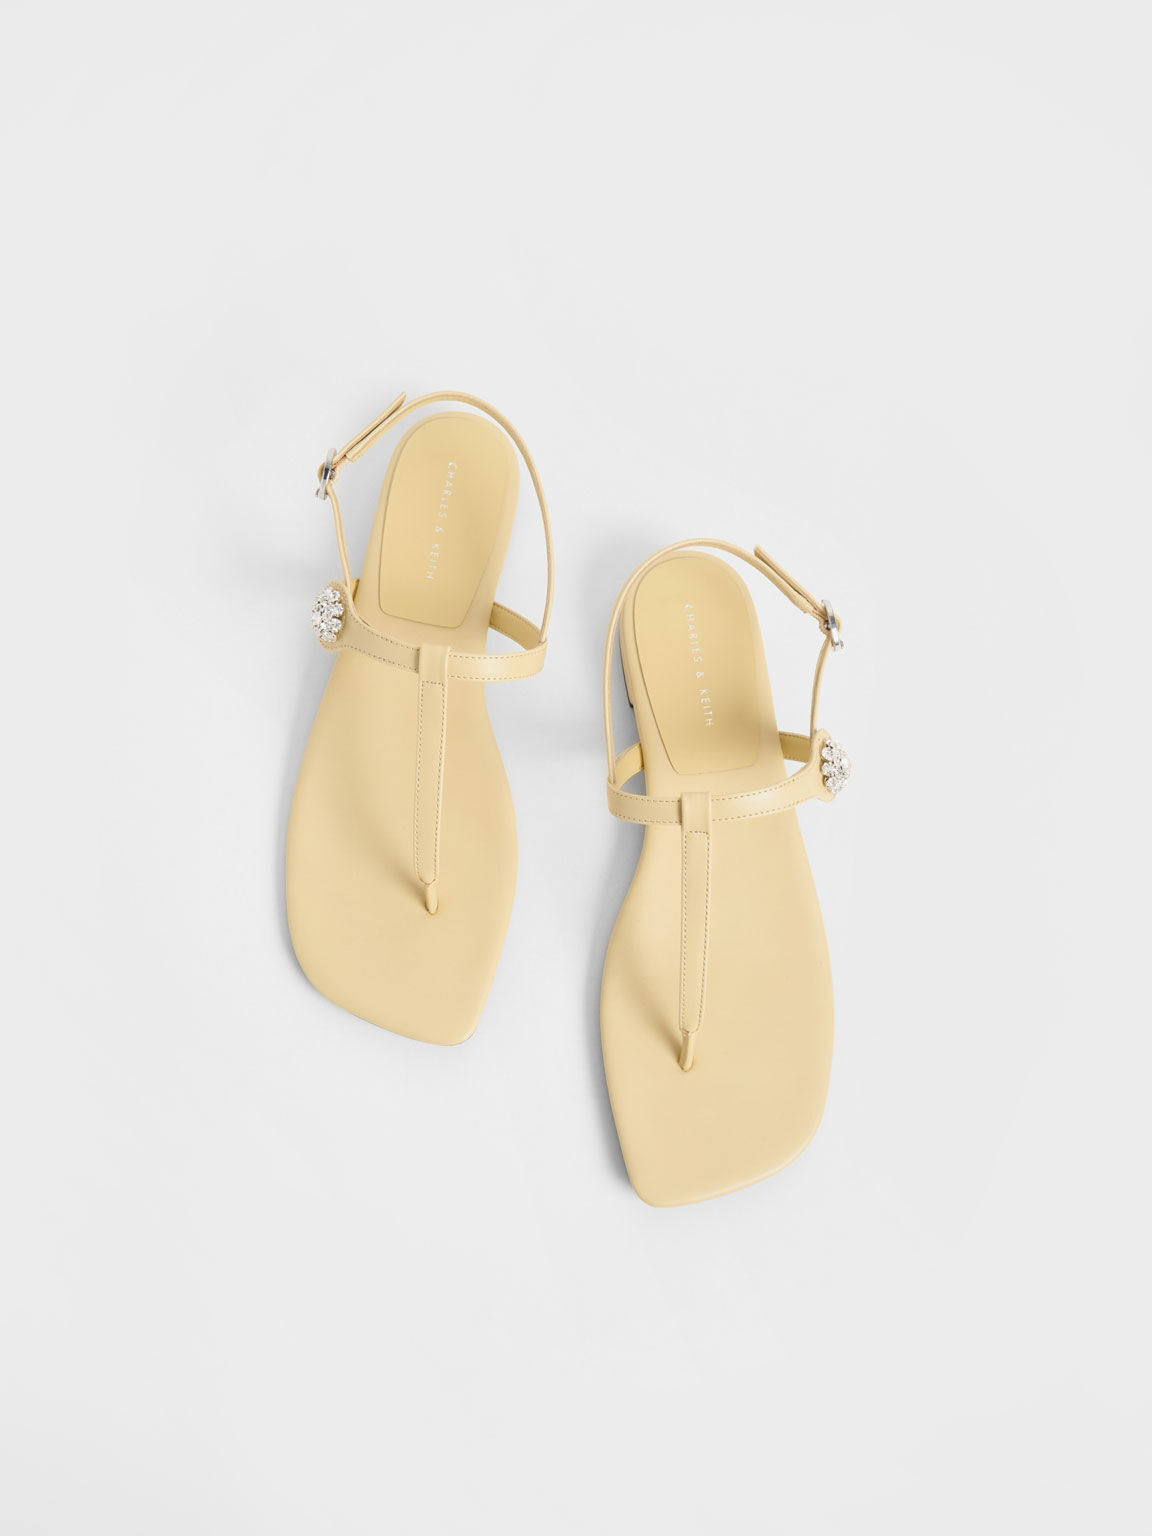 Gem-Embellished Thong Sandals, Yellow, hi-res